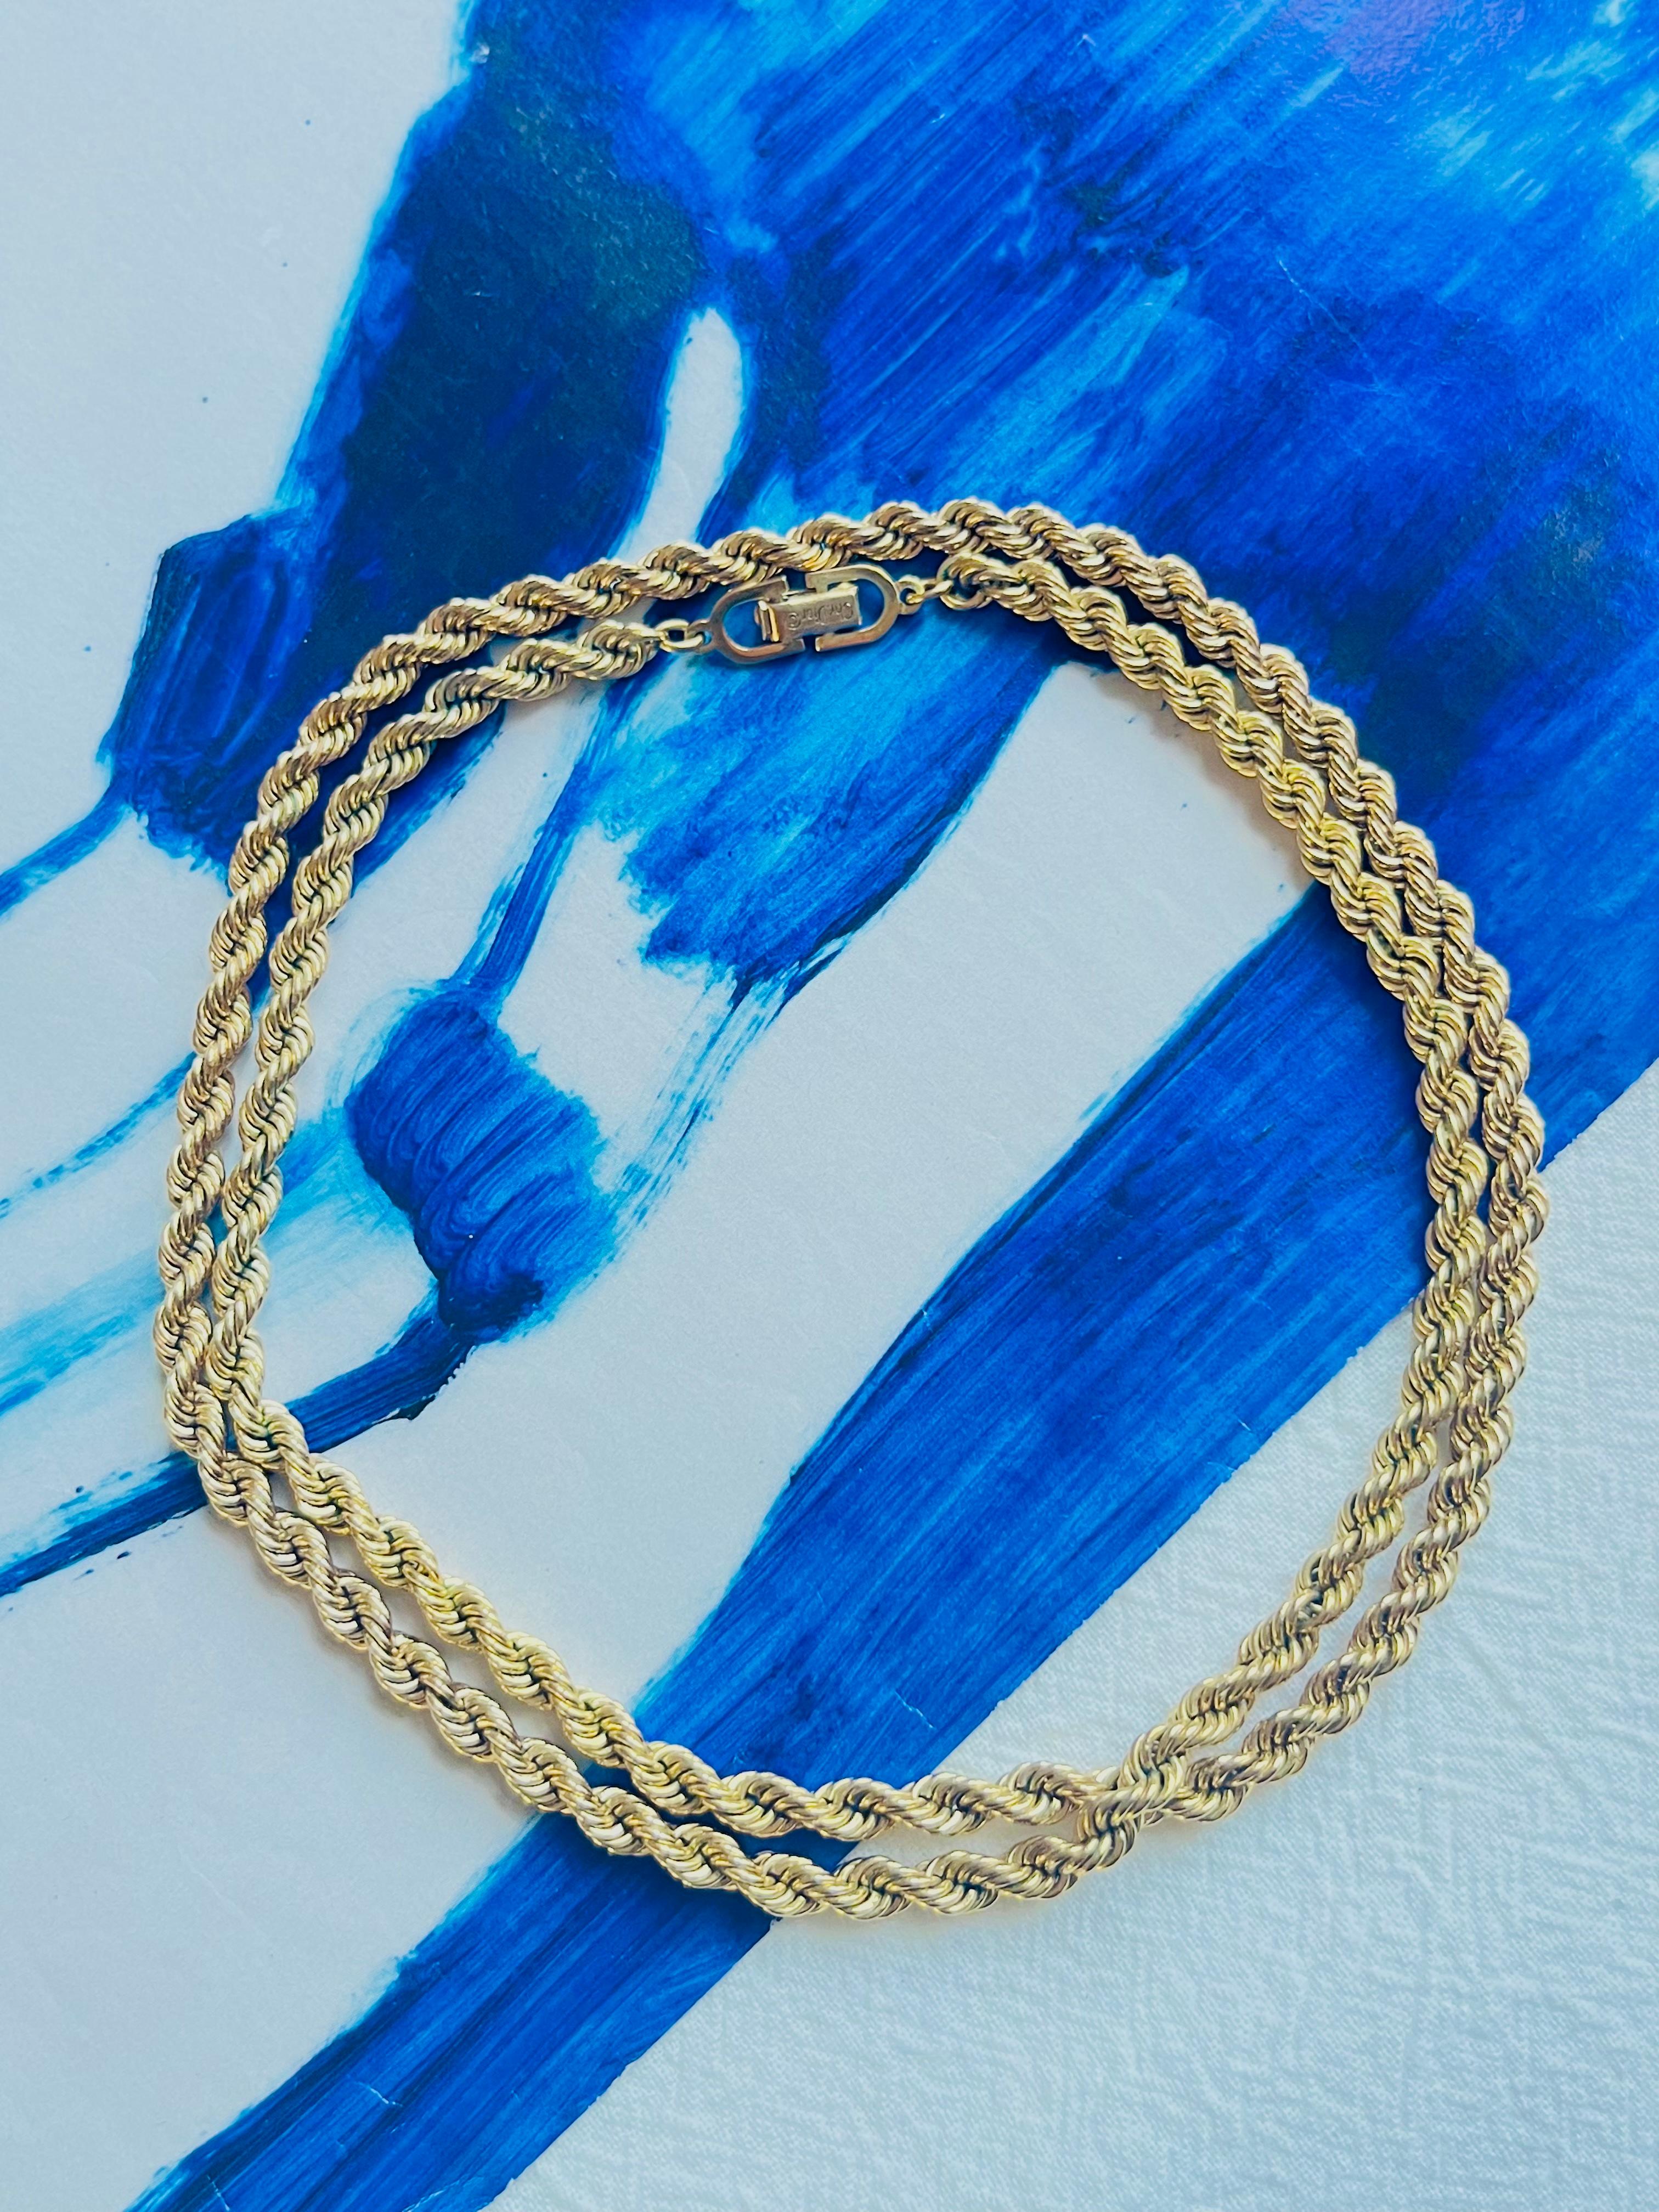 Christian Dior Vintage 1980 Twist Chain Rope Versatile Long Necklace Bracelet, Gold Tone

Très bon état. 100% authentique.

Une pièce unique. Signé 